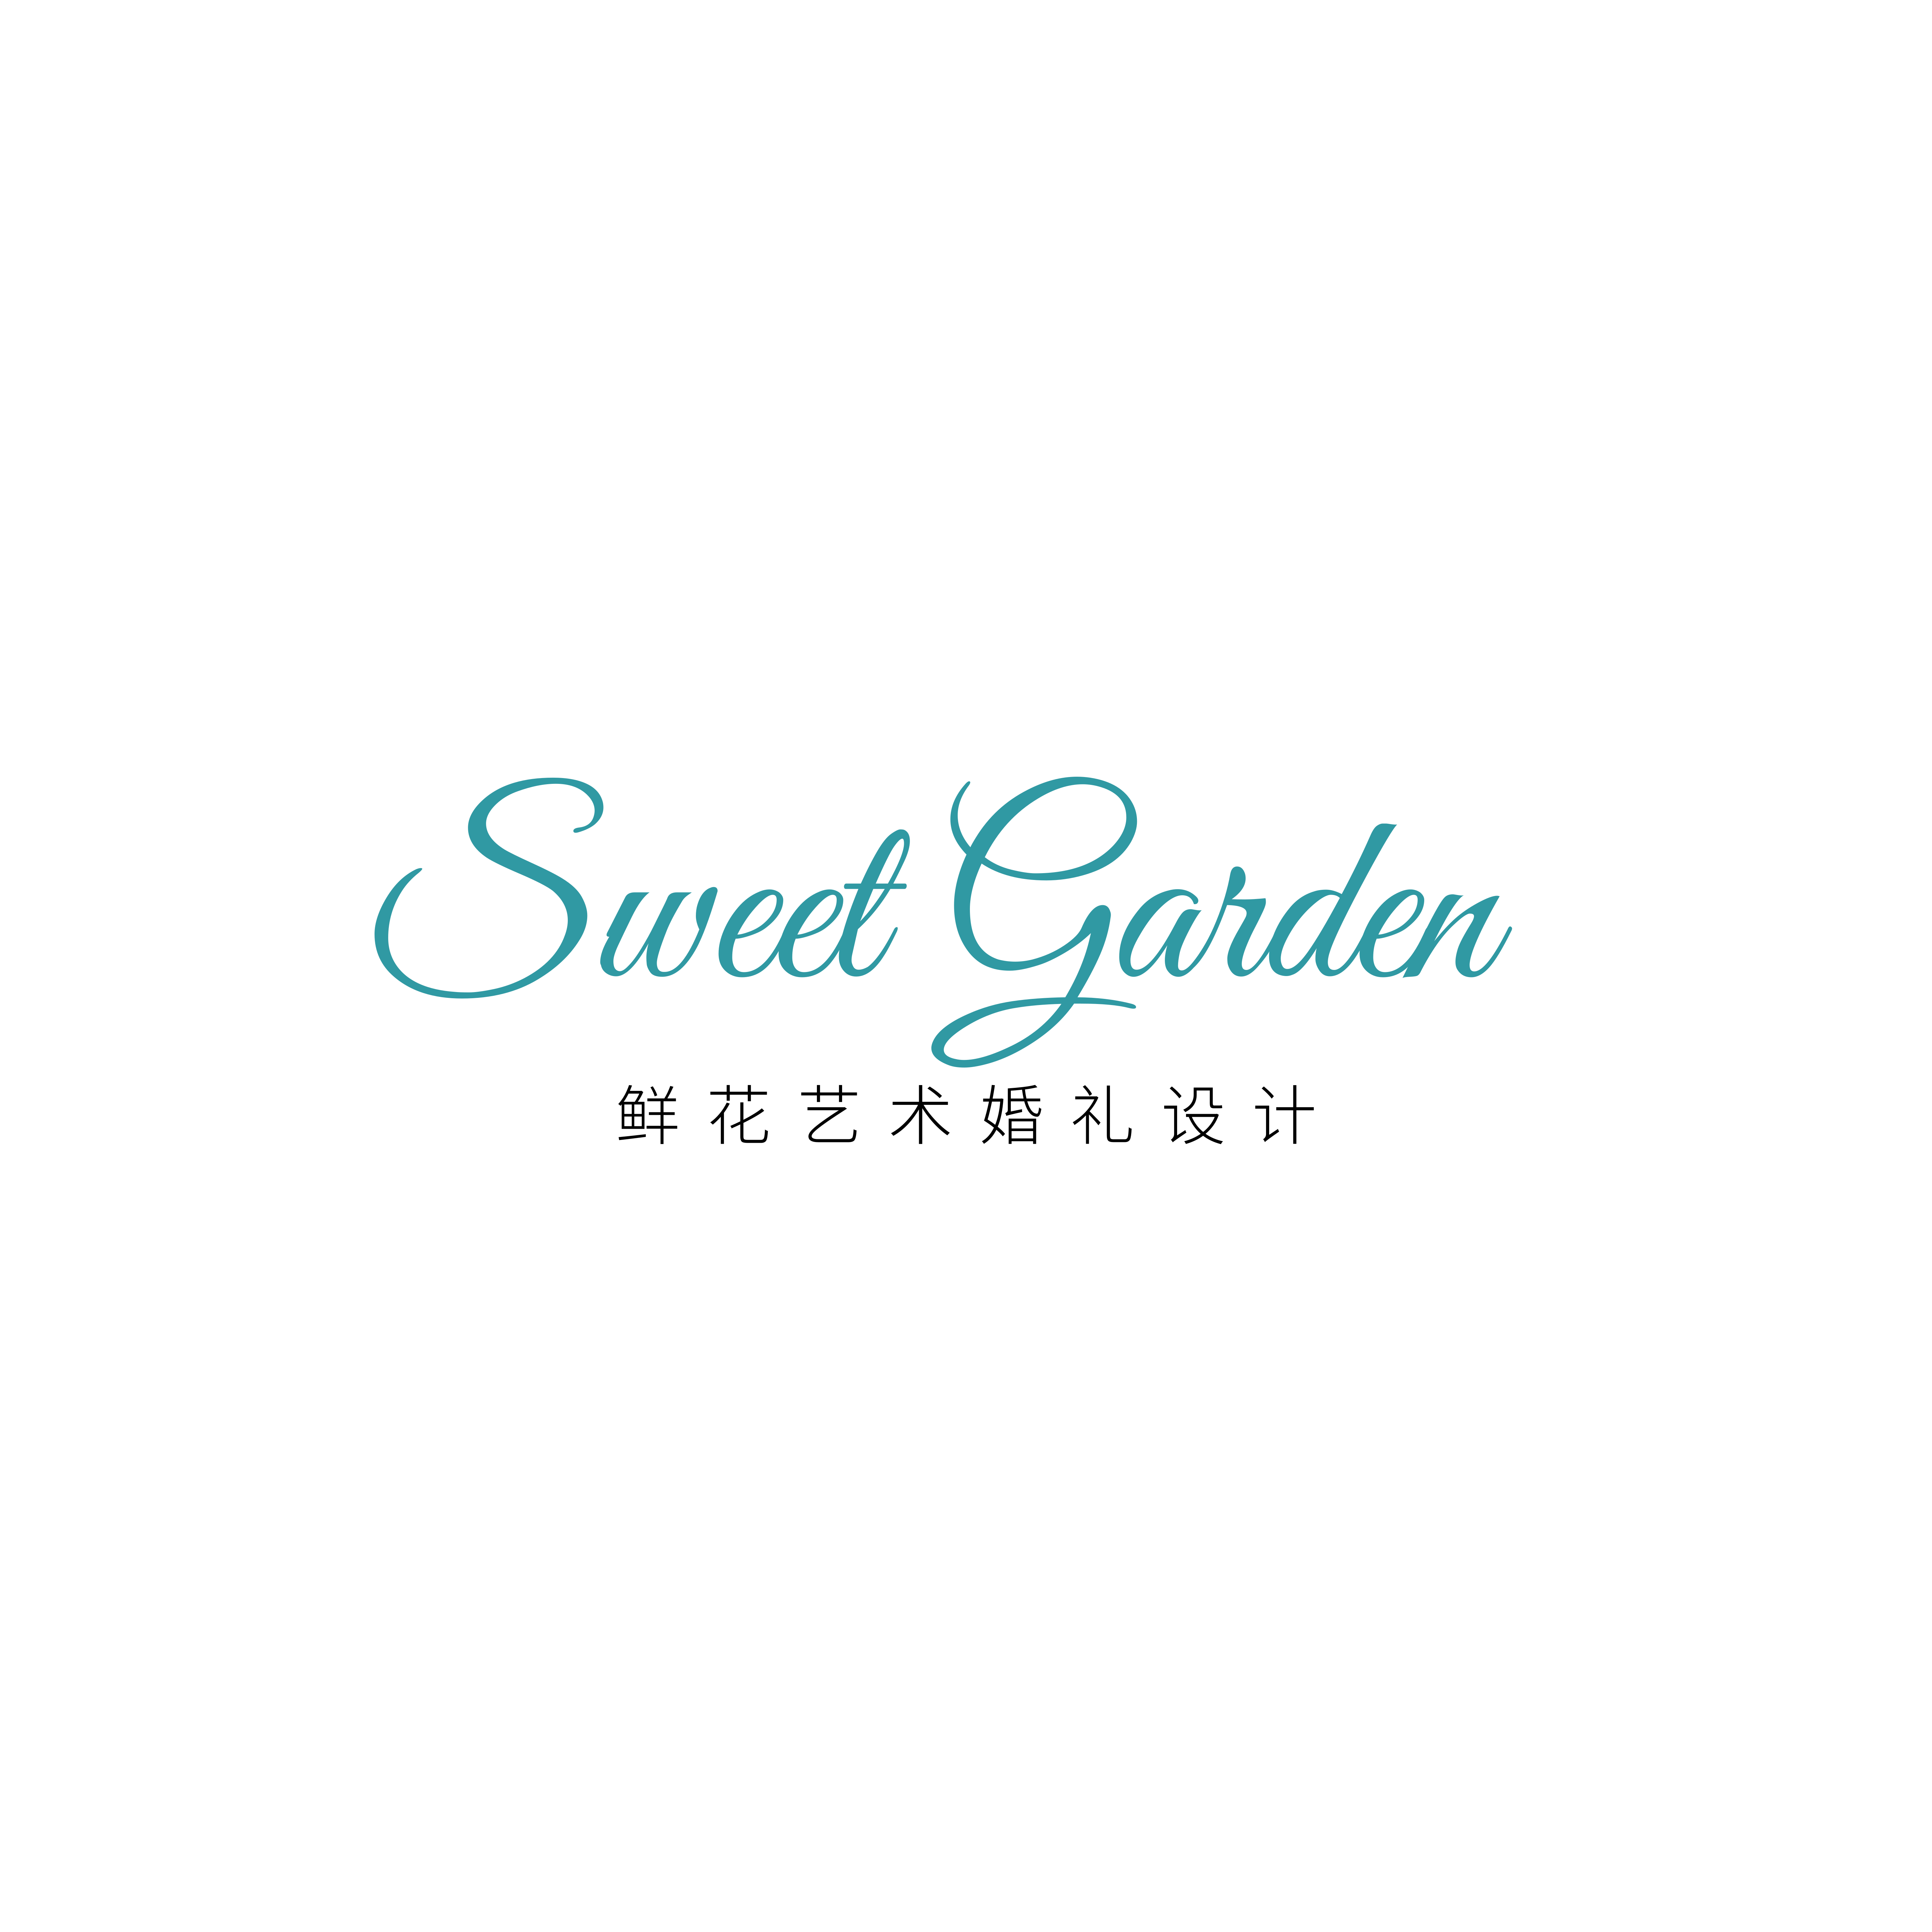 sweet garden艺术婚礼